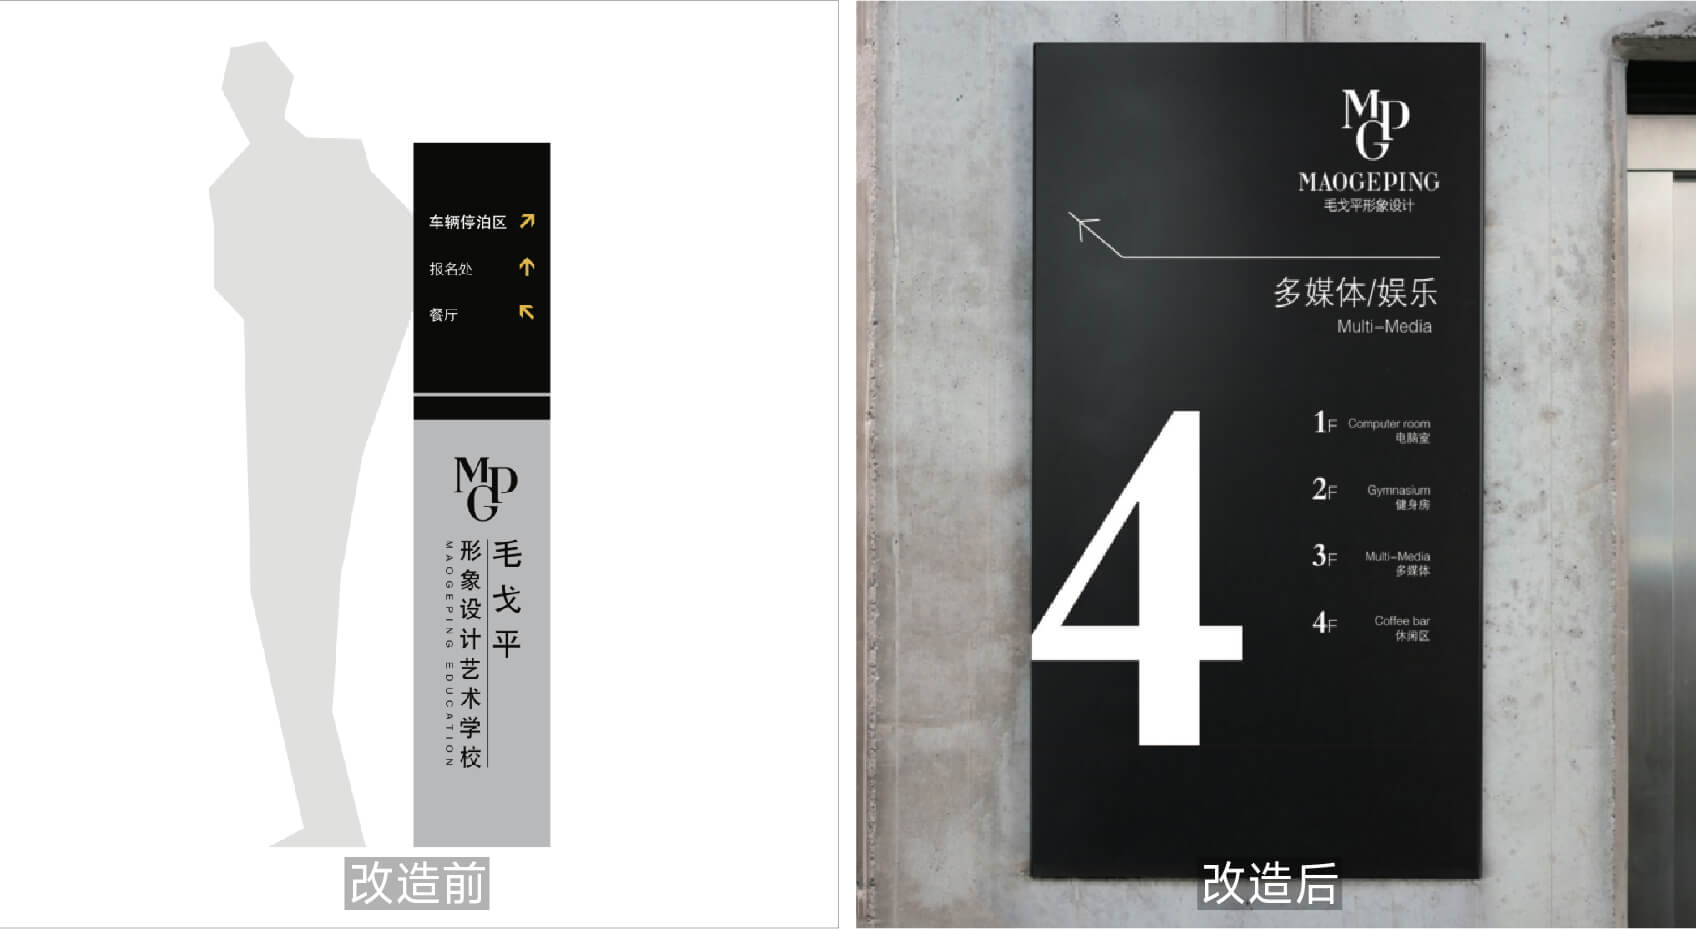 毛戈平品牌小全案VI空间画册化妆学校包装设计-46.jpg